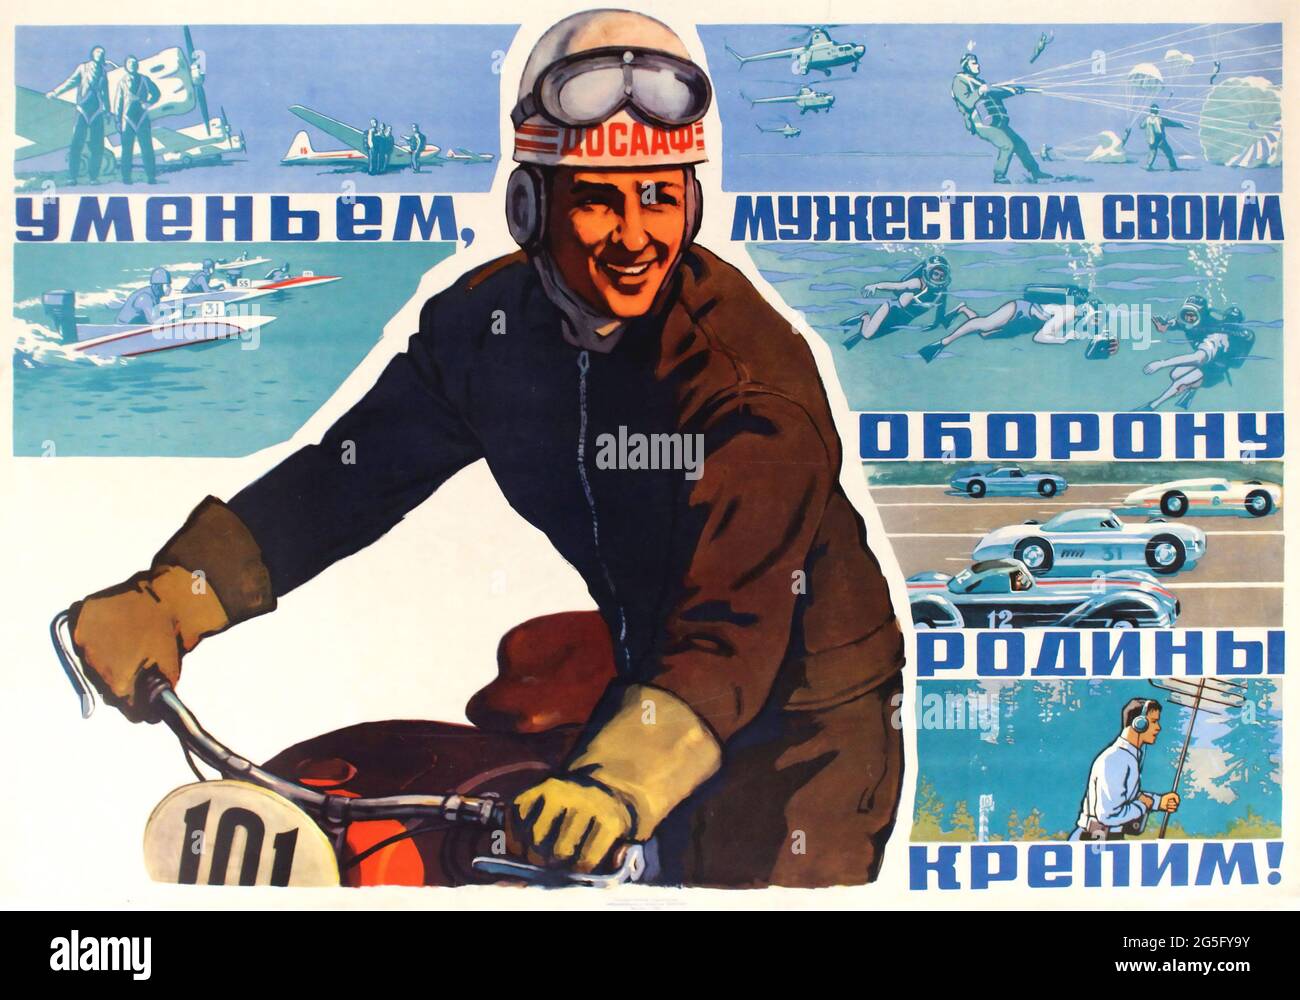 Klassisches Sowjetisches Sportplakat Mit Autorennen Und Fallschirmspringen. Wir stärken die Verteidigung unseres Vaterlandes mit unseren Fähigkeiten und unserem Brabur! 1961. Stockfoto